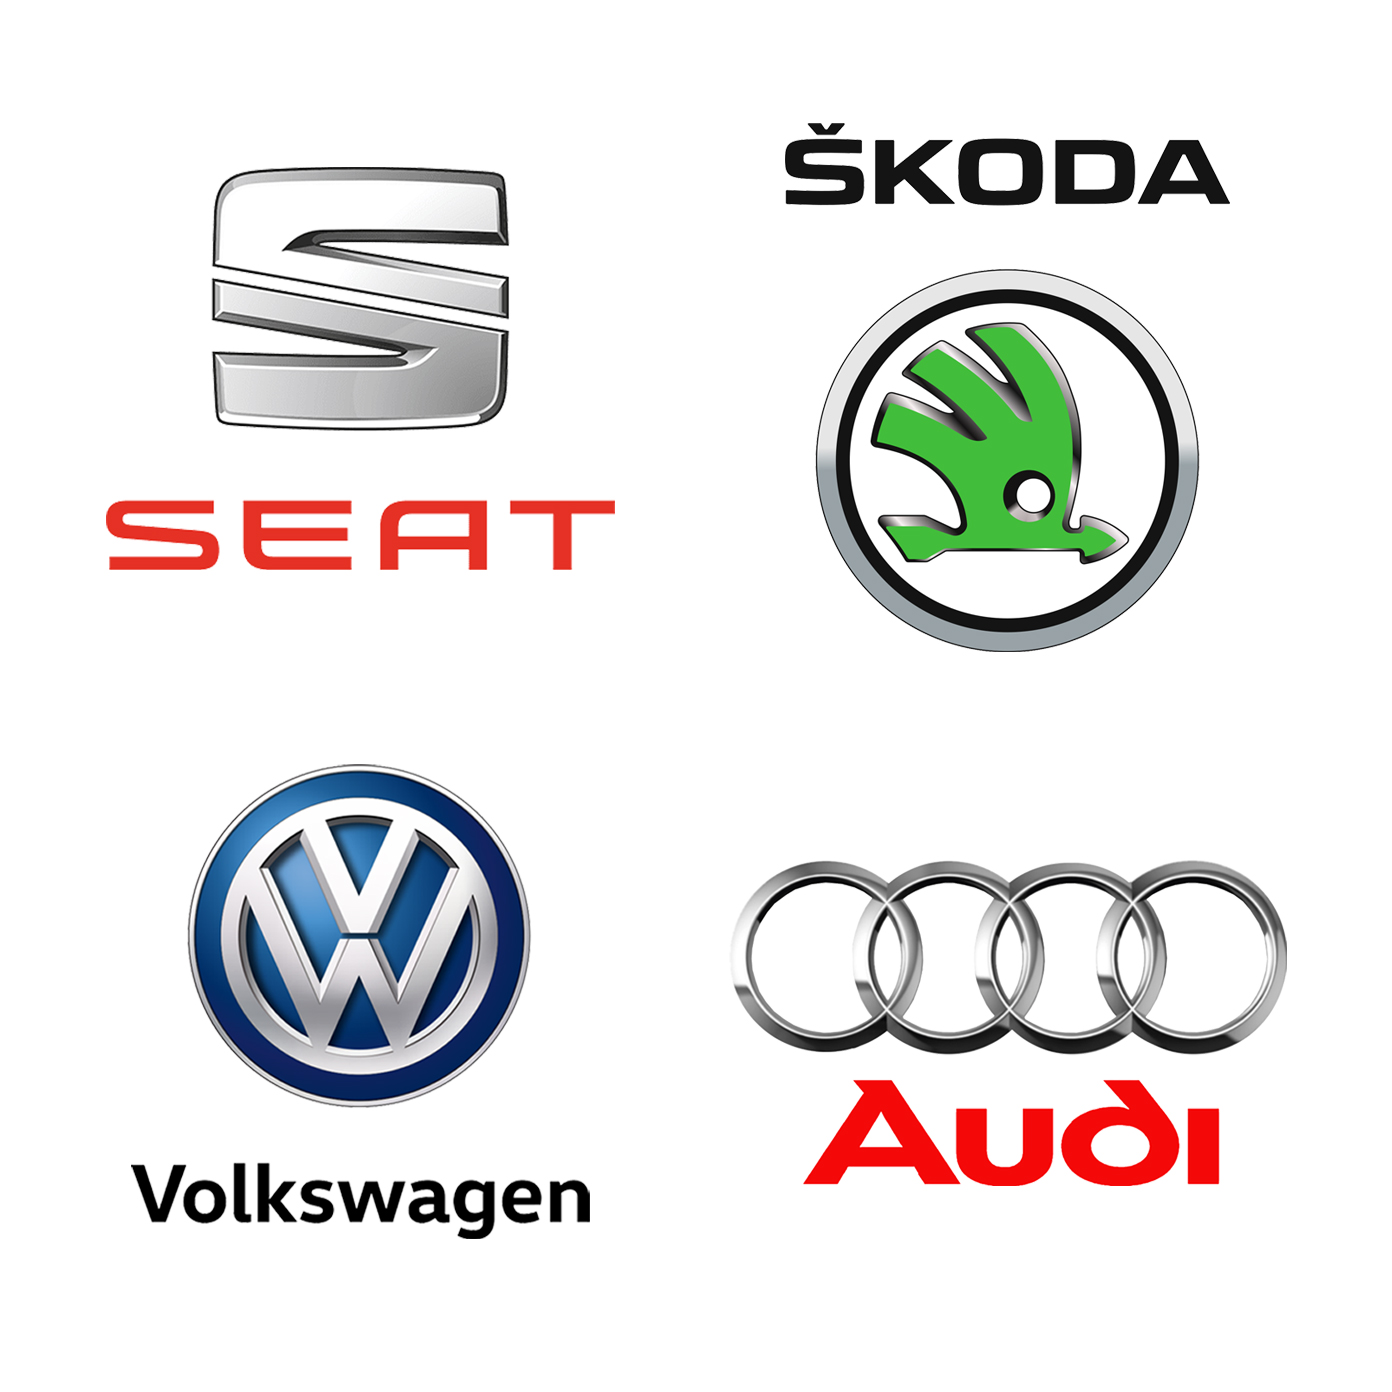 Seat logo, Skoda logo, VW logo, Audi logo